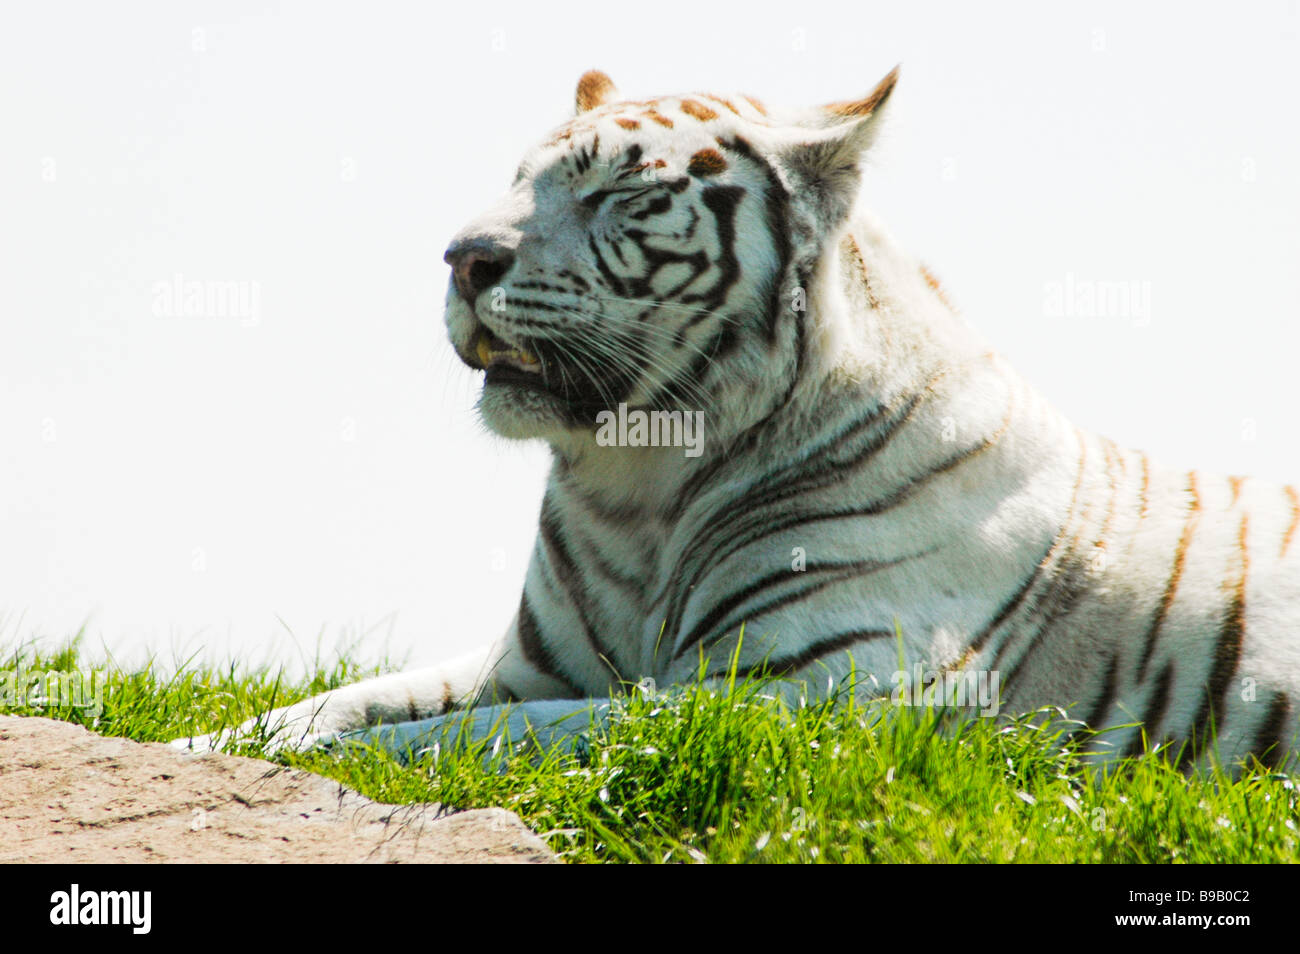 A white tiger enjoying the sun Stock Photo